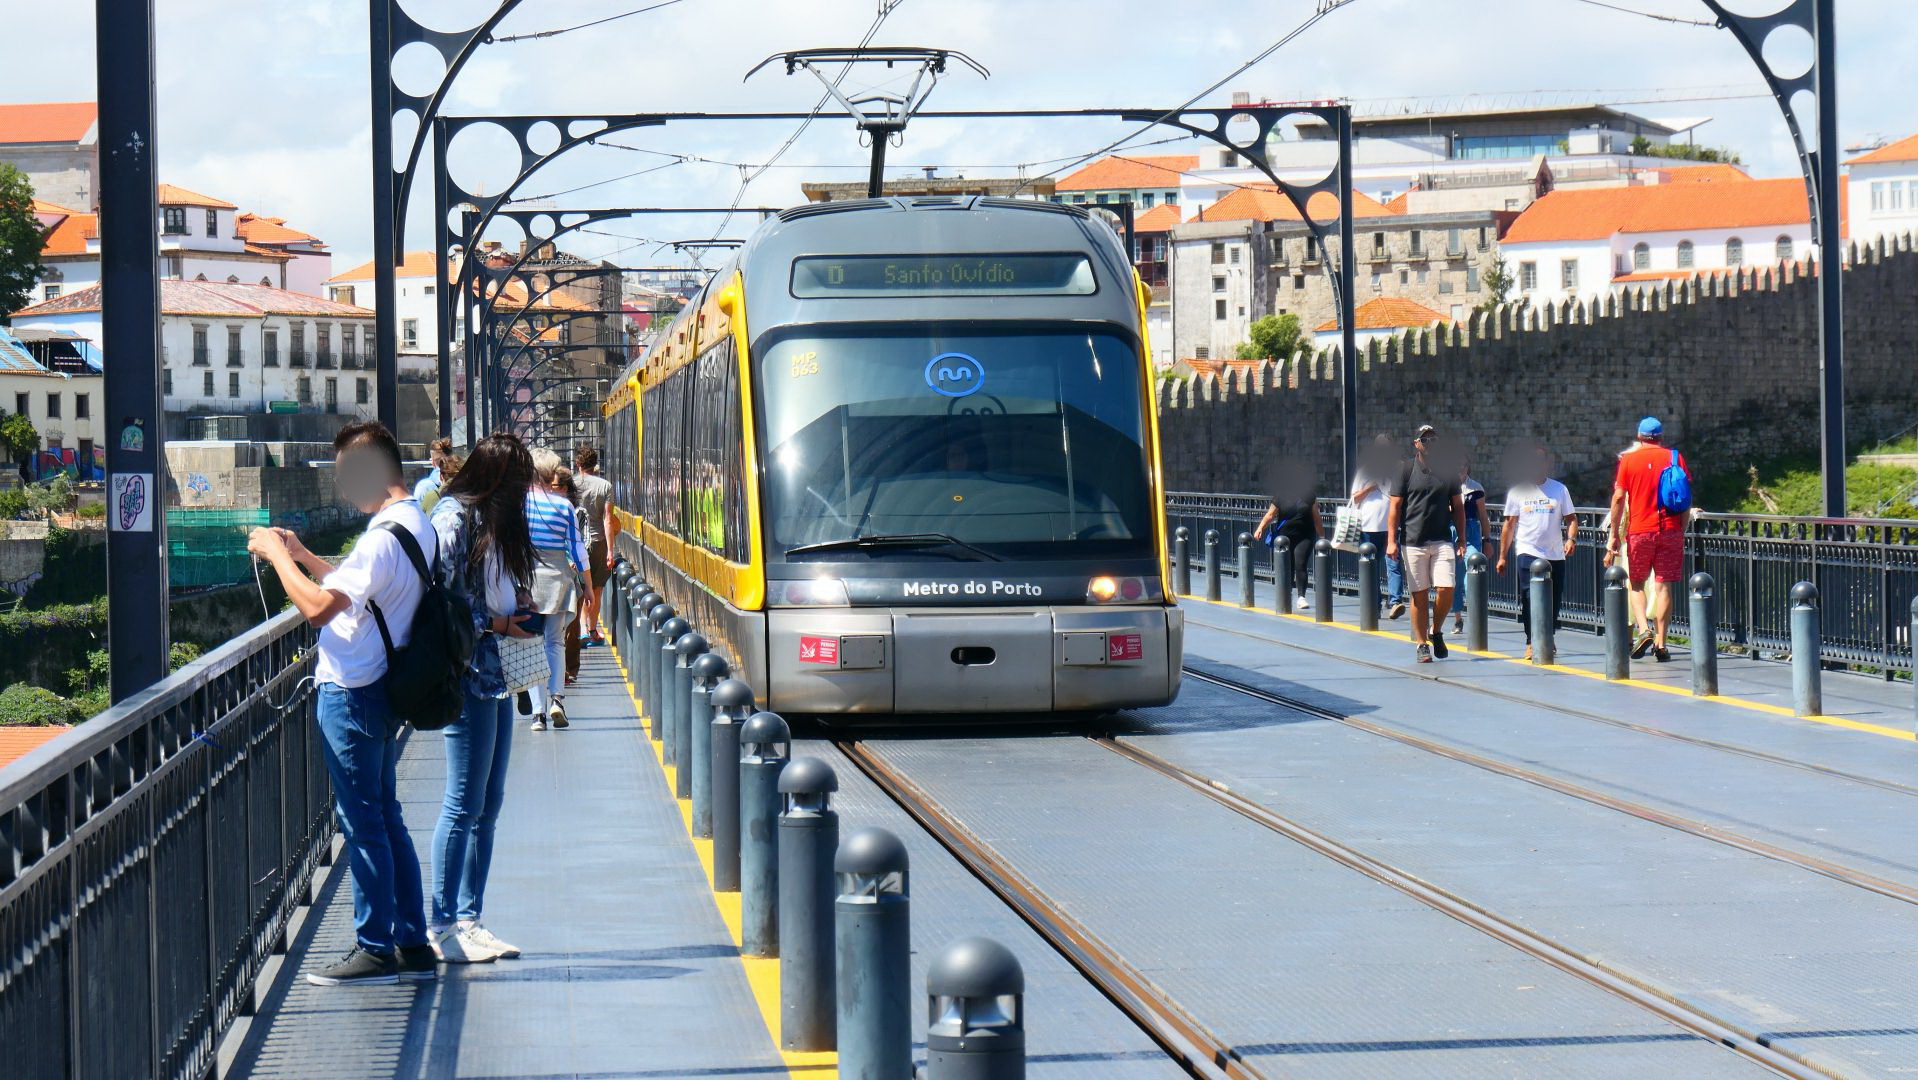 PORTO - die Wagen der Metro sehen sehr futuristisch aus